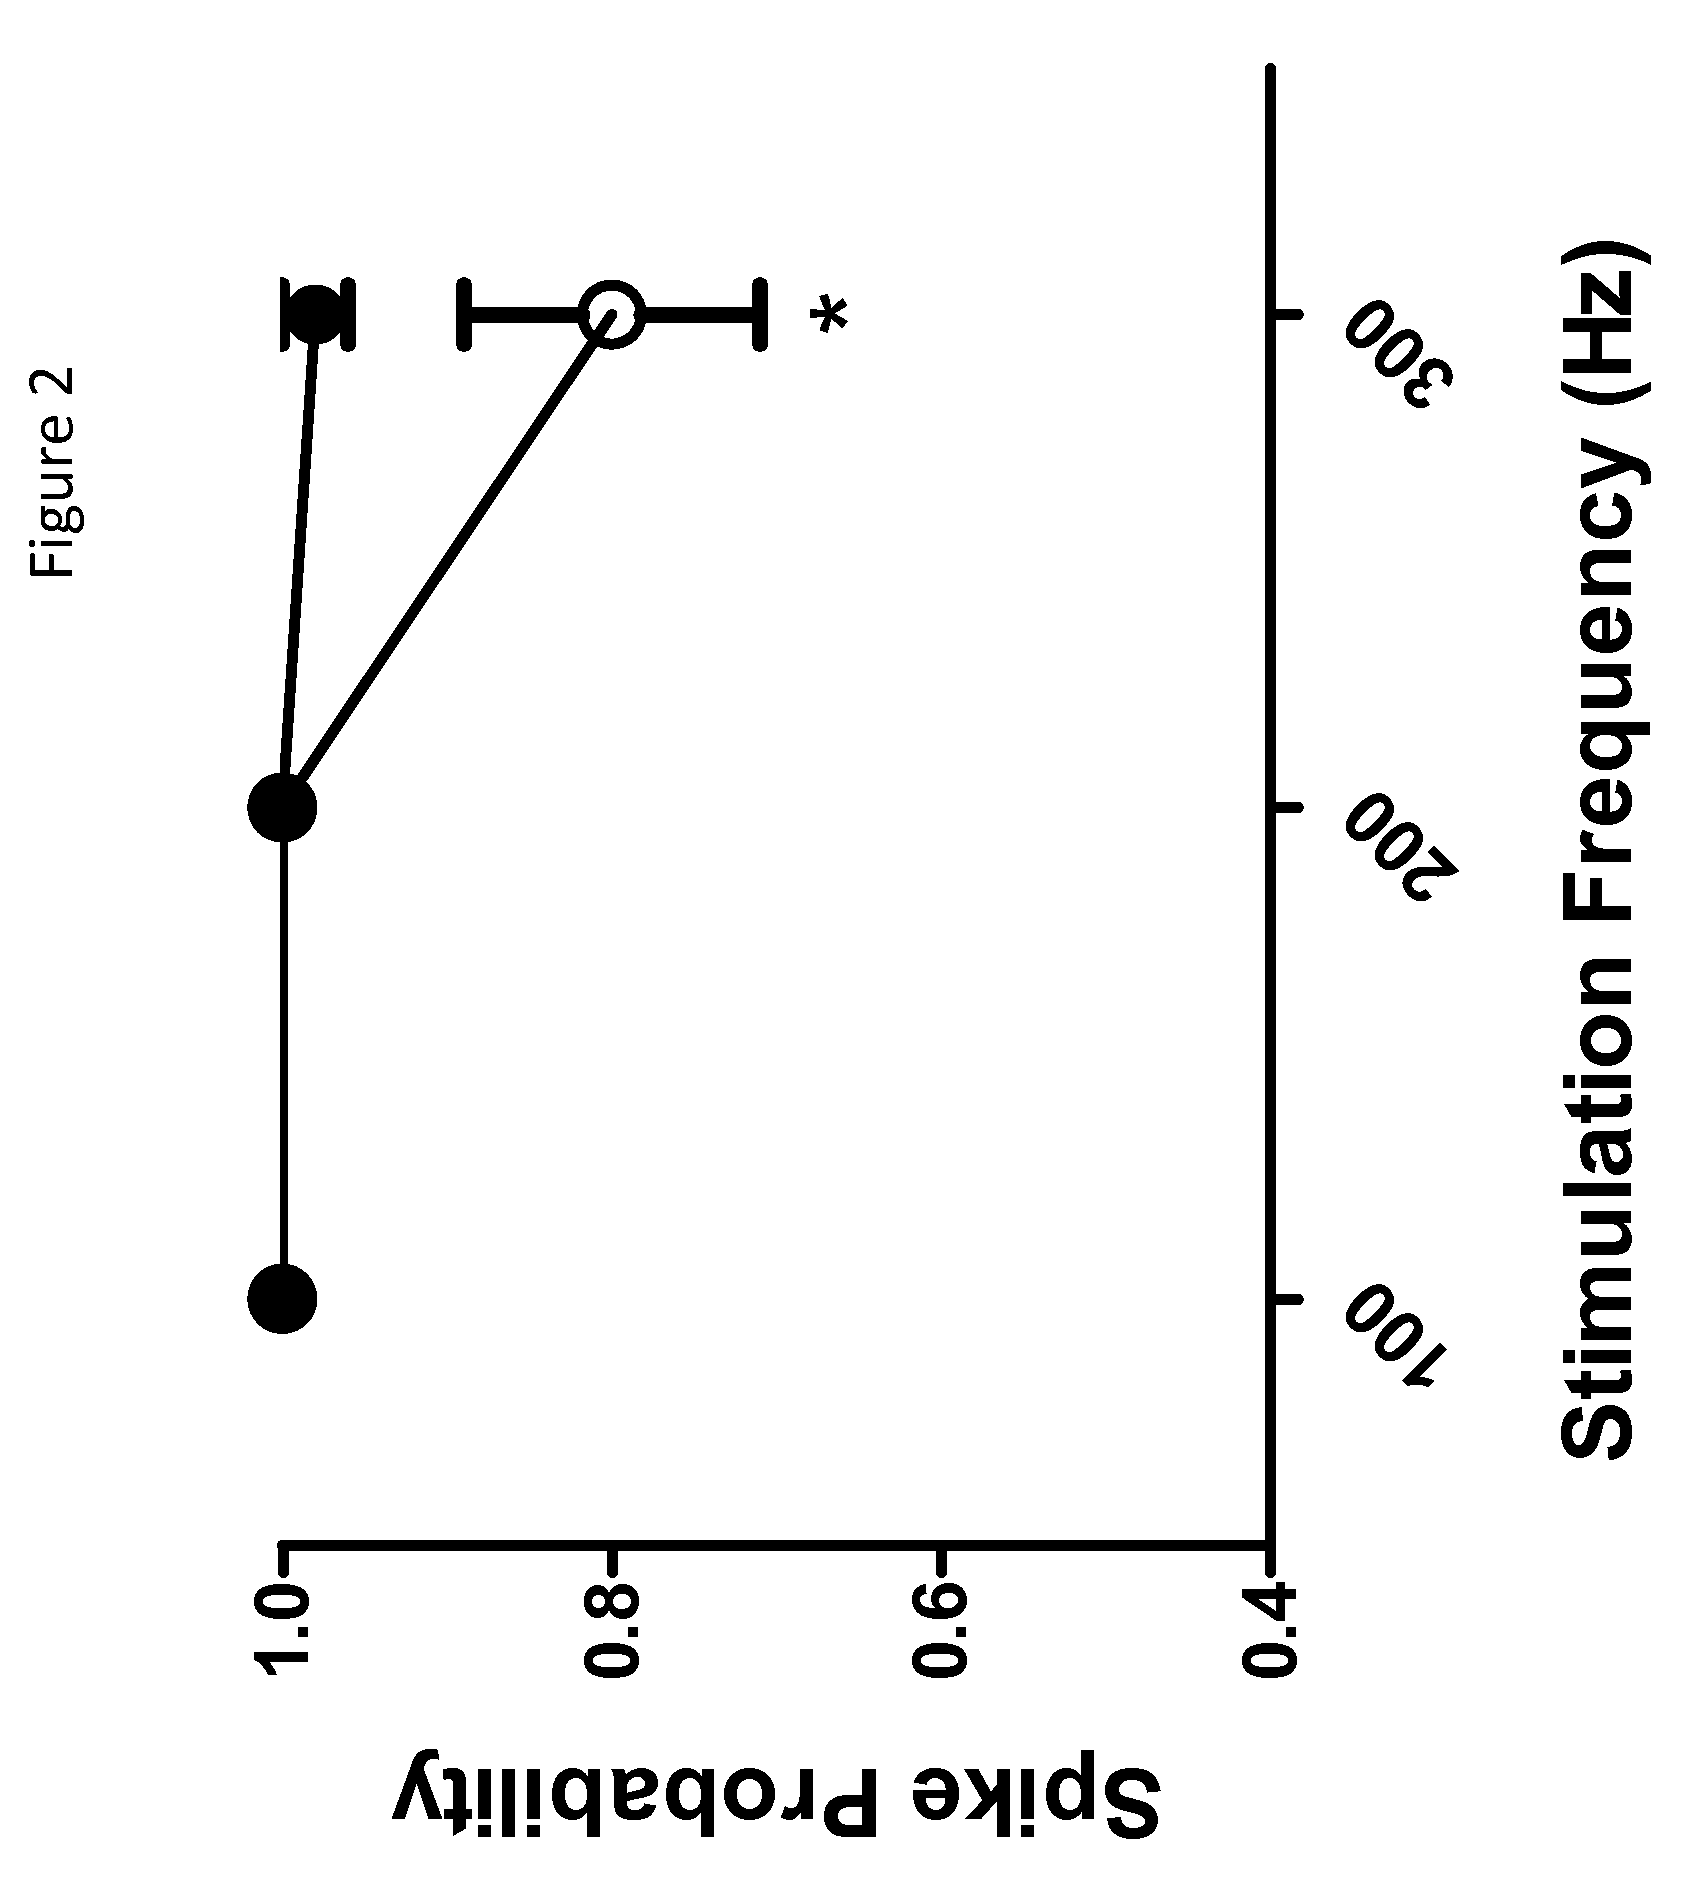 Imidazolidinedione derivatives